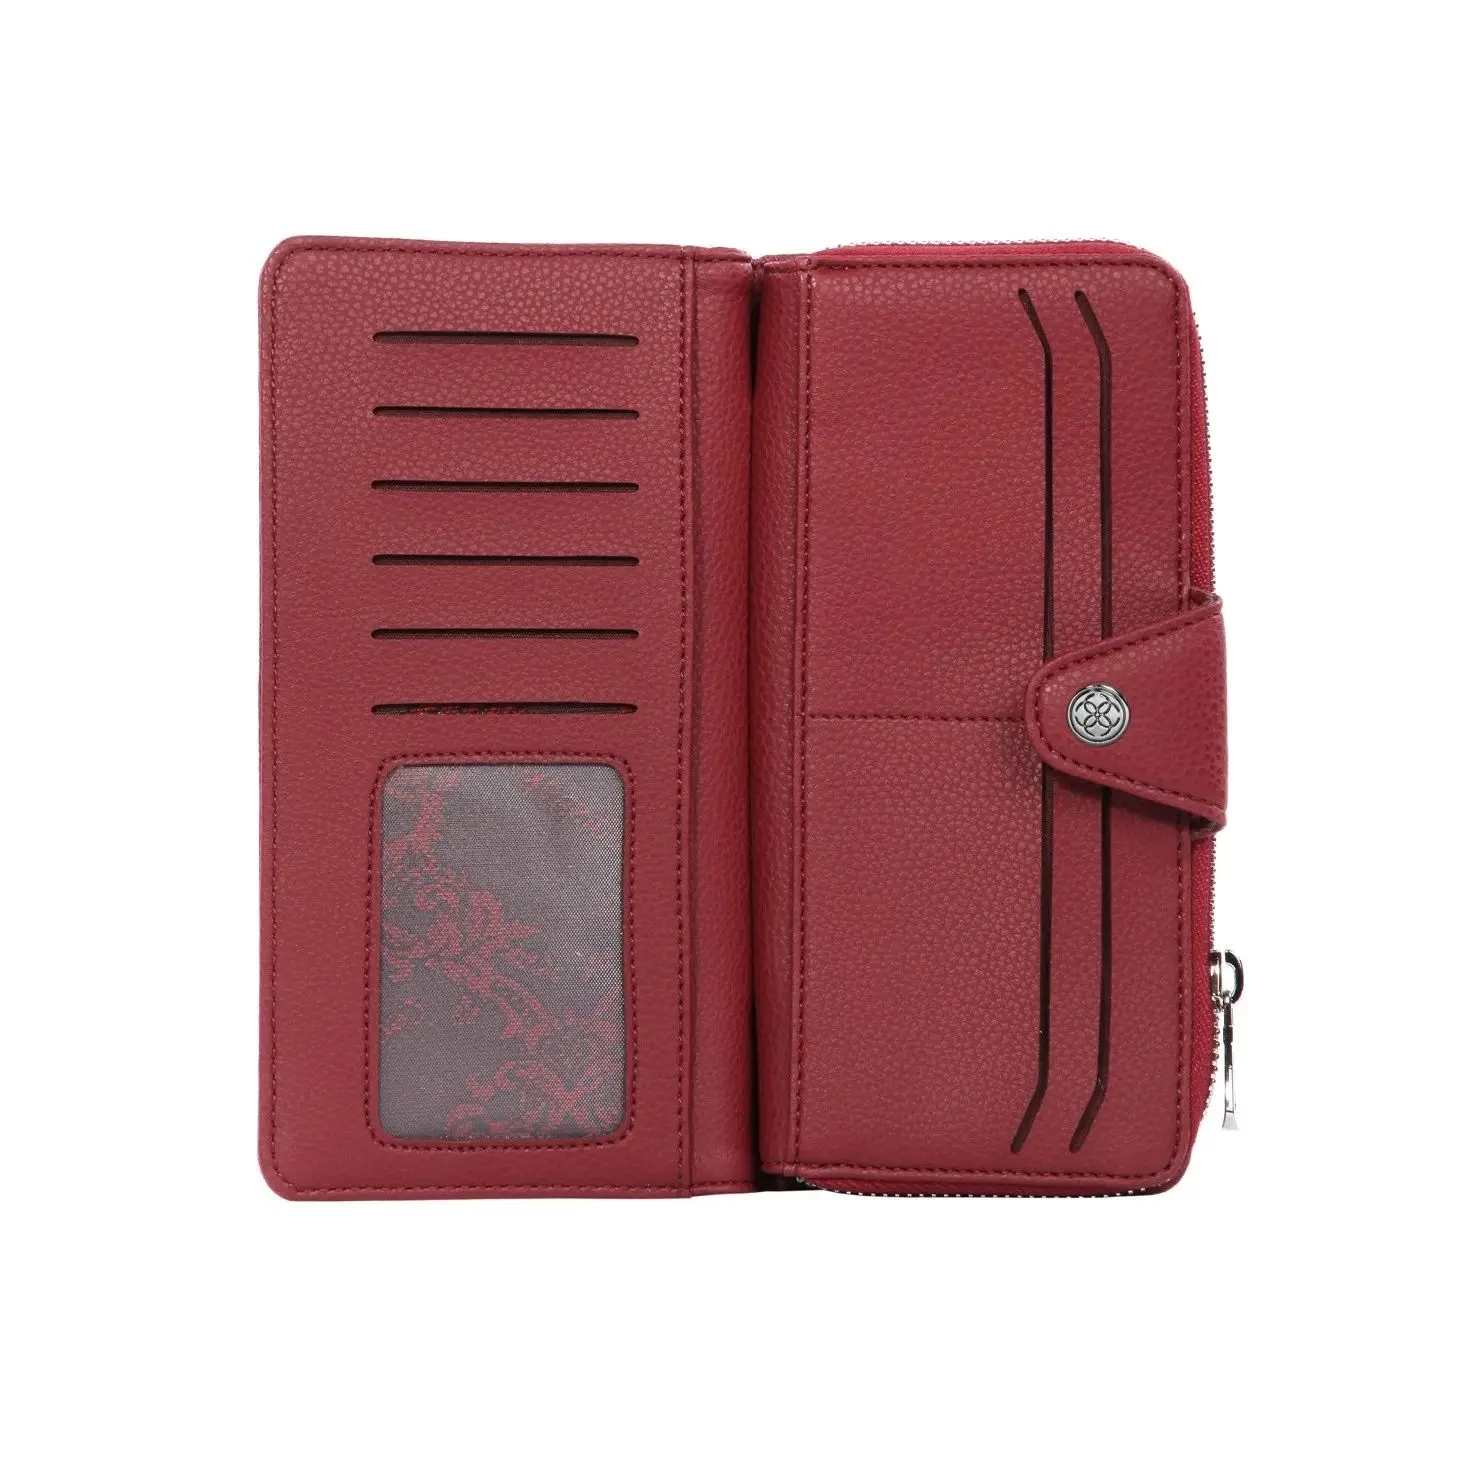 

Cengiz Pakel женский кошелек-портмоне 65204M Maddy элегантный стильный бордовый цвет элегантность удобное использование повседневный дизайн Легкая о...